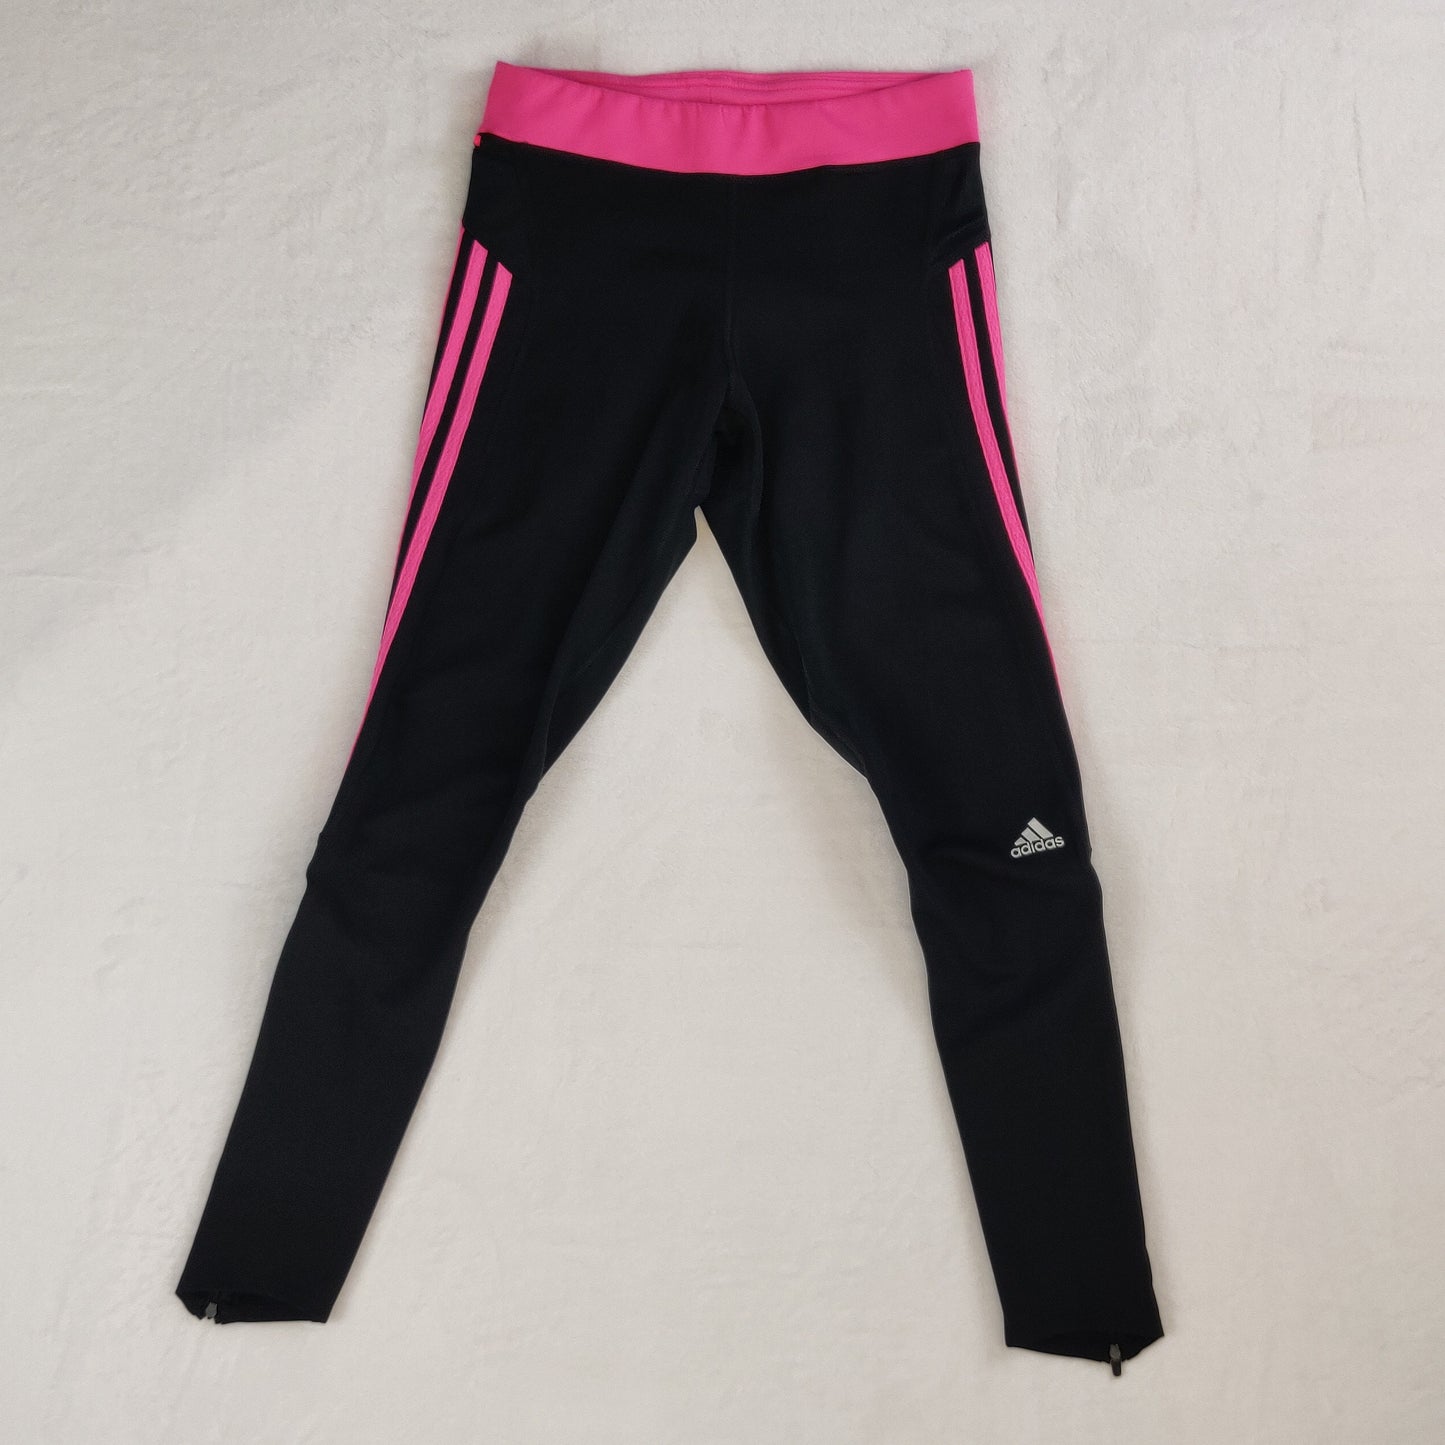 Adidas Climalite Response Black Pink Leggings Women UK 10 / Small ~ M61875